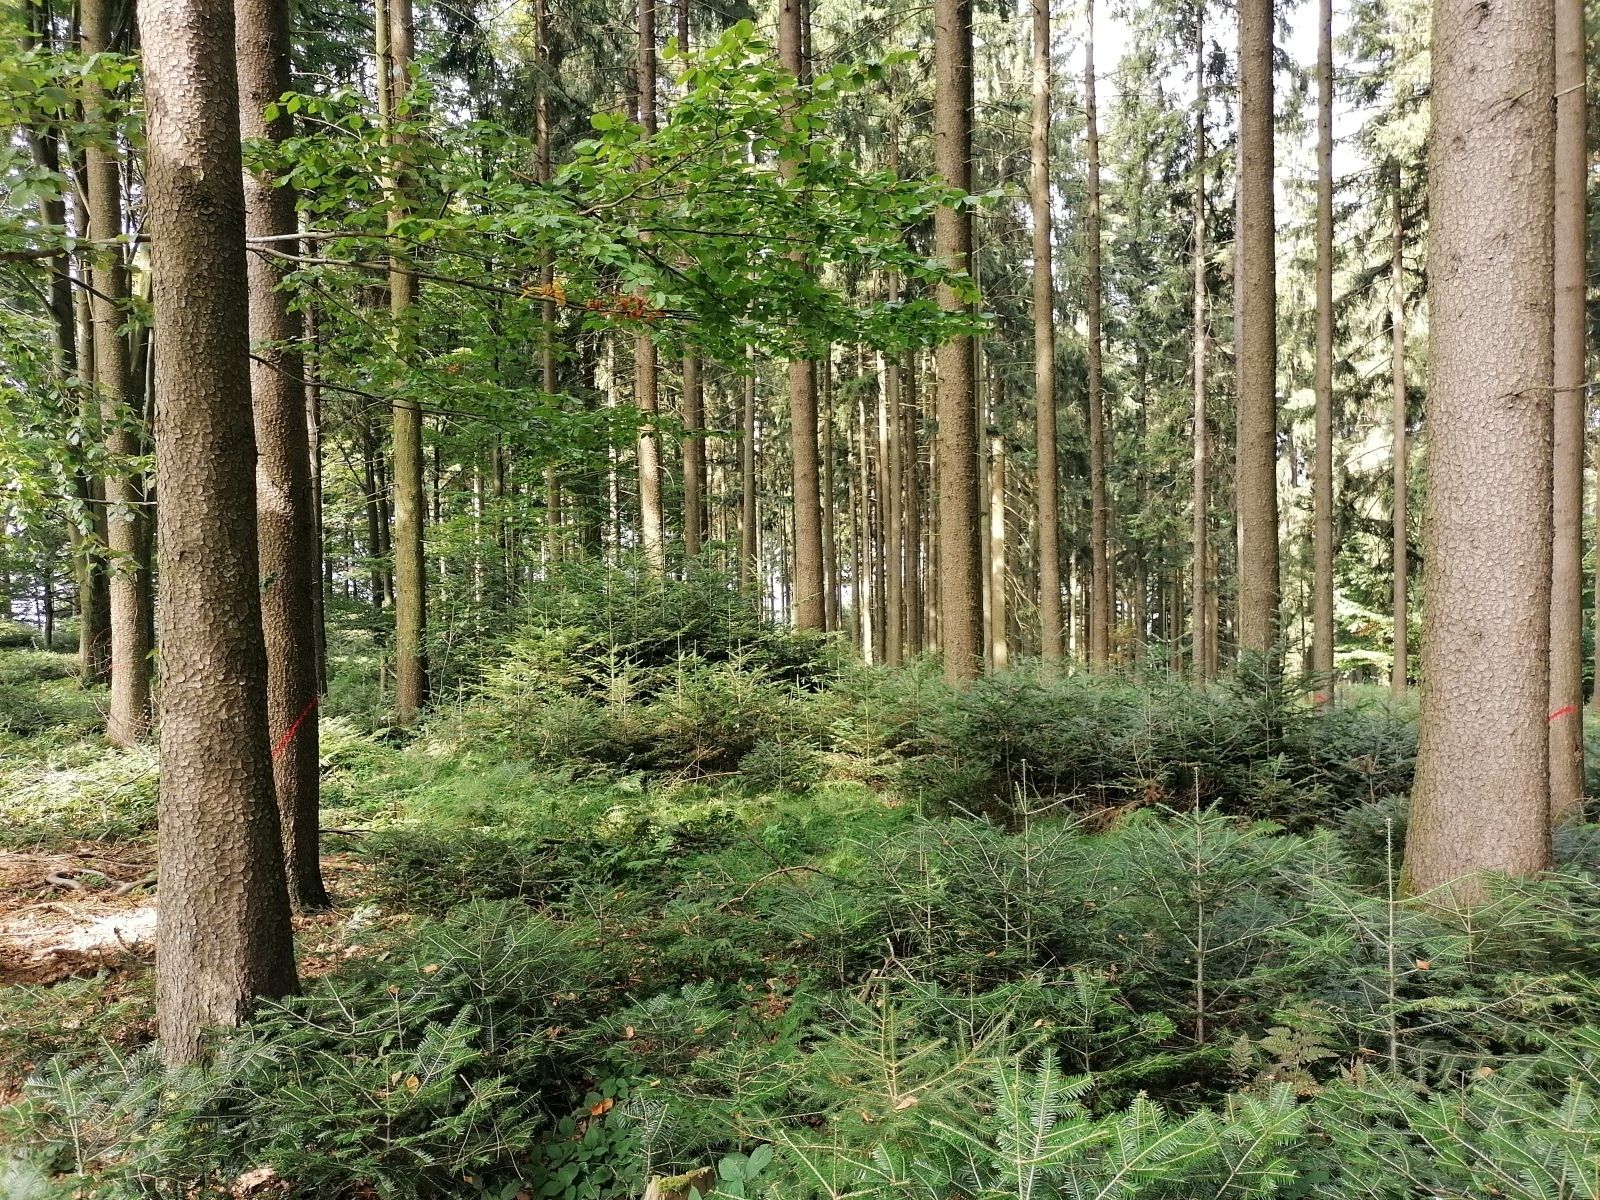 Forstausschuss Waldfoto 2 Pennetzdorfer.jpg